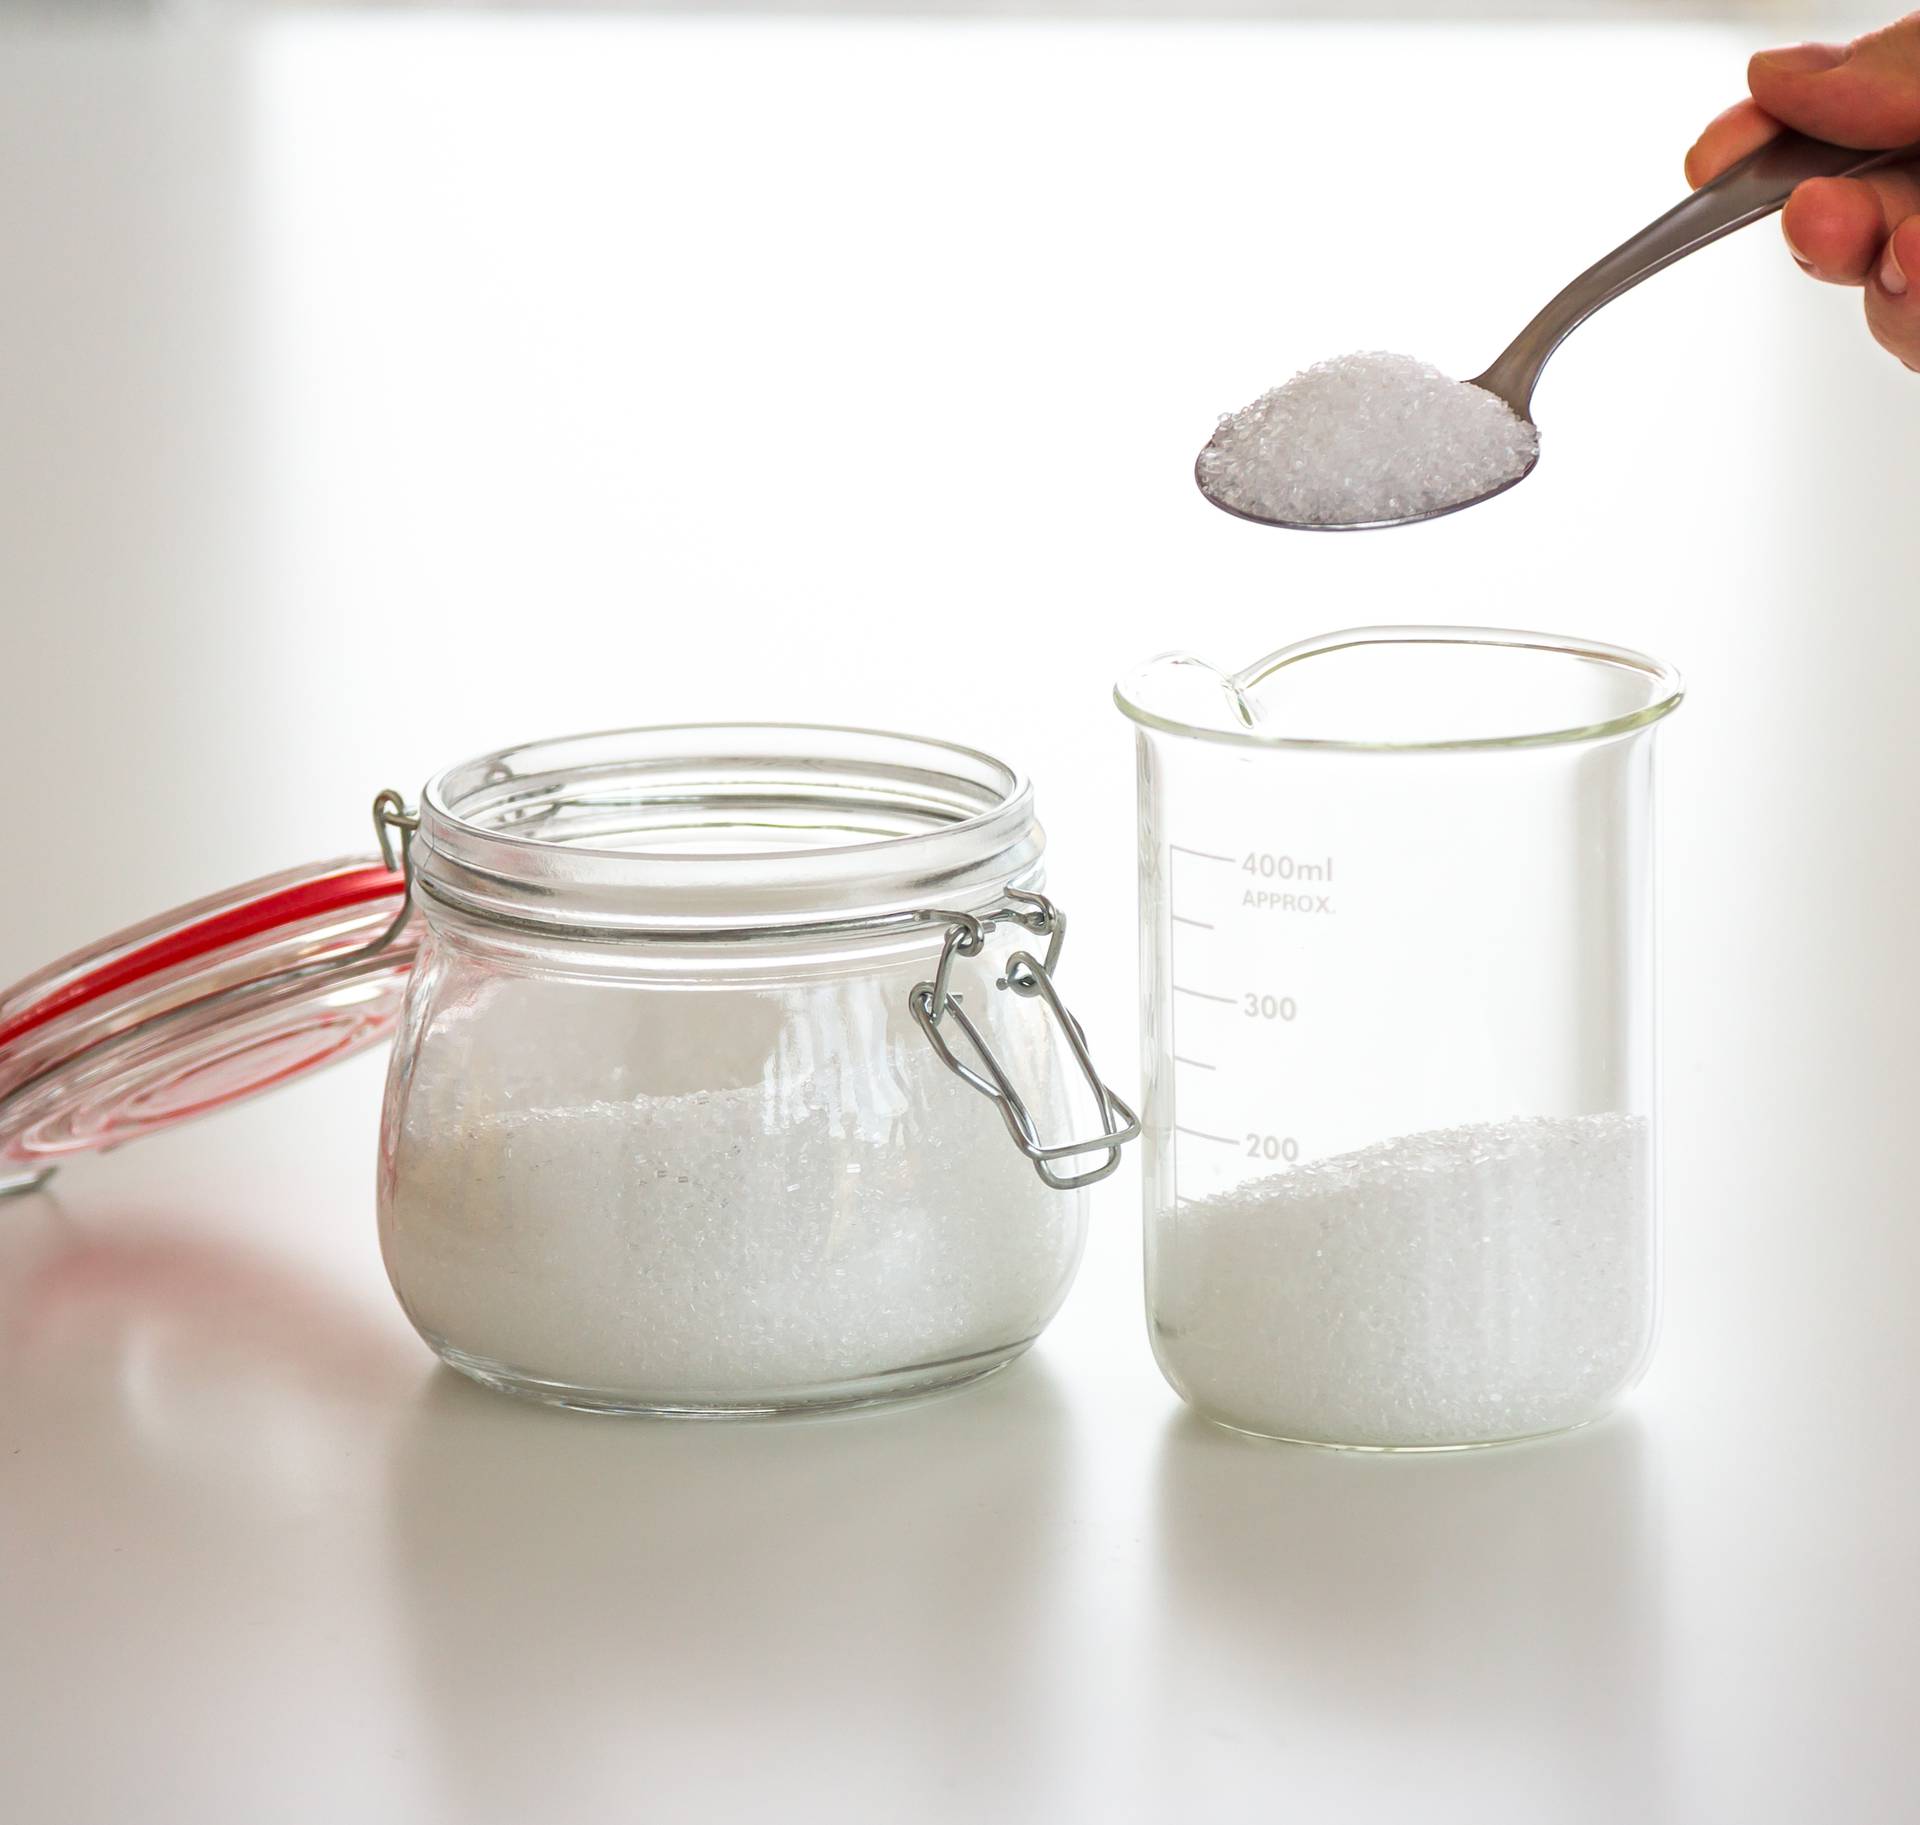 Odlični trikovi za čišćenje kuće u kojima glavnu ulogu ima sol